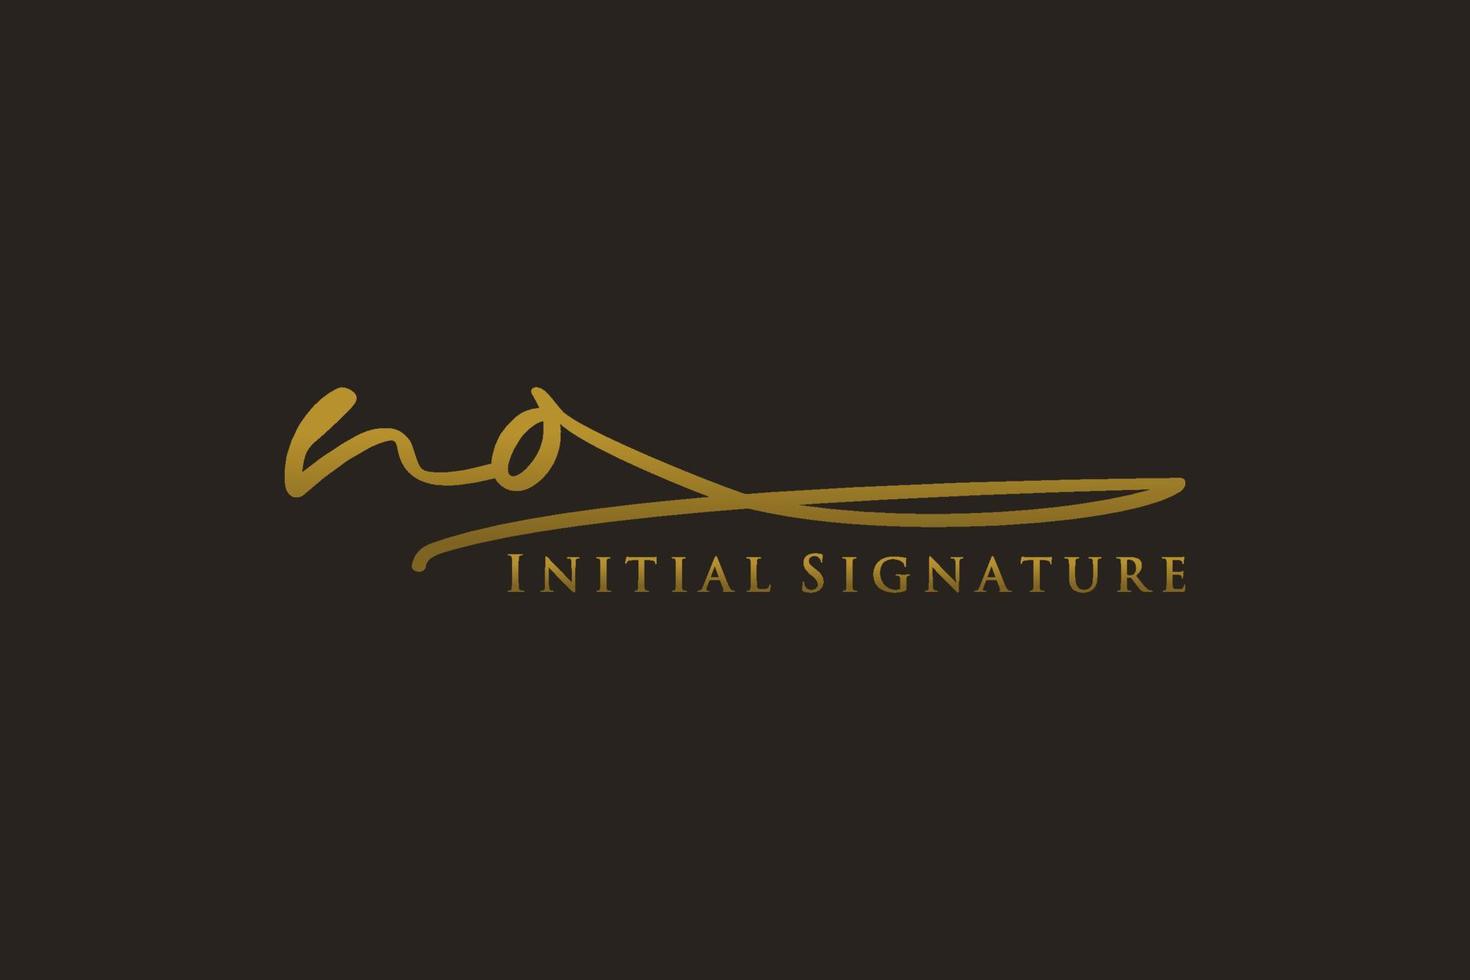 plantilla de logotipo de firma sin letra inicial logotipo de diseño elegante. ilustración de vector de letras de caligrafía dibujada a mano.